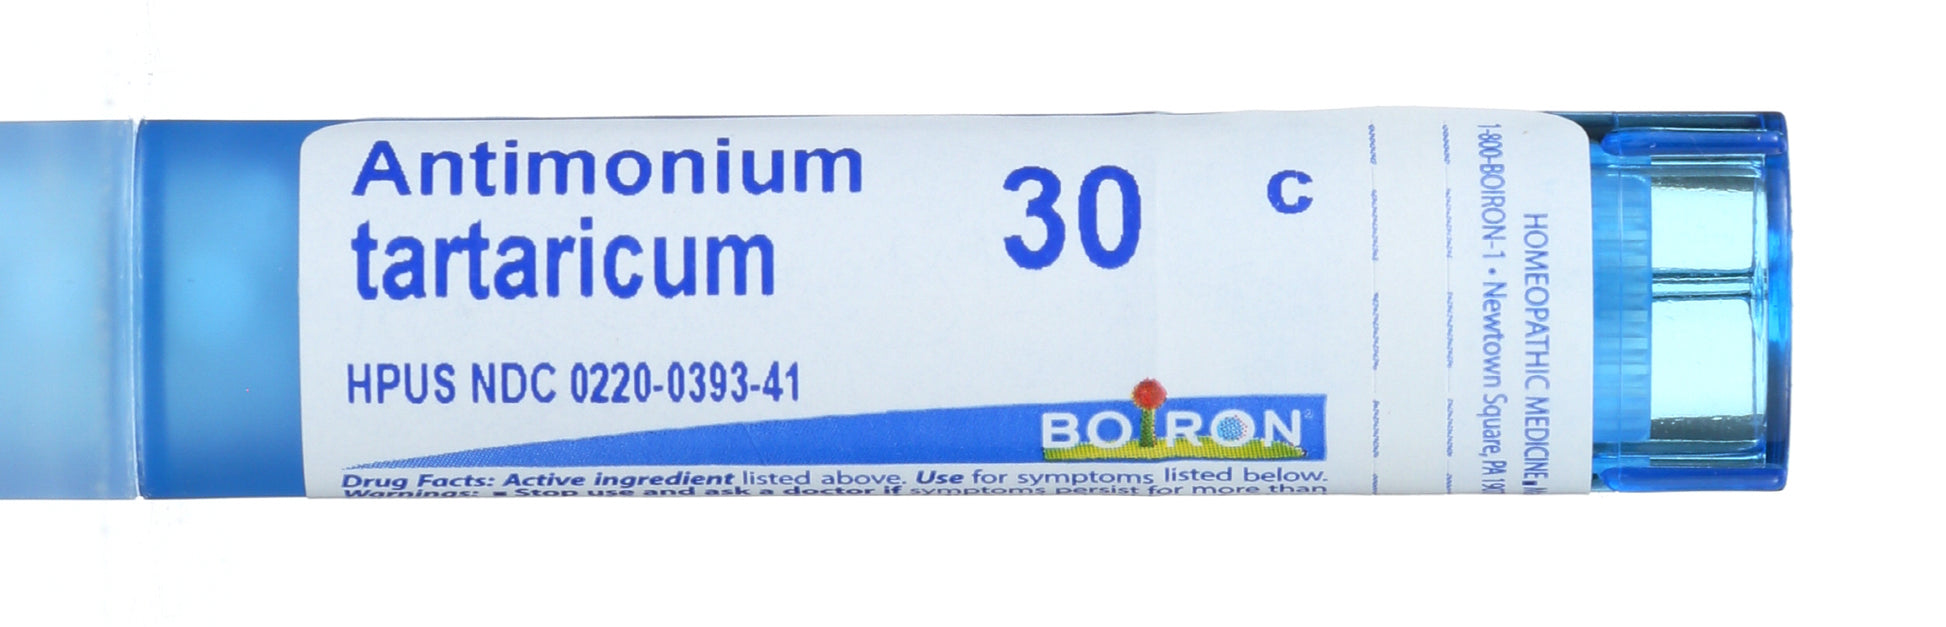 Boiron Antimonium tartaricum 30 c